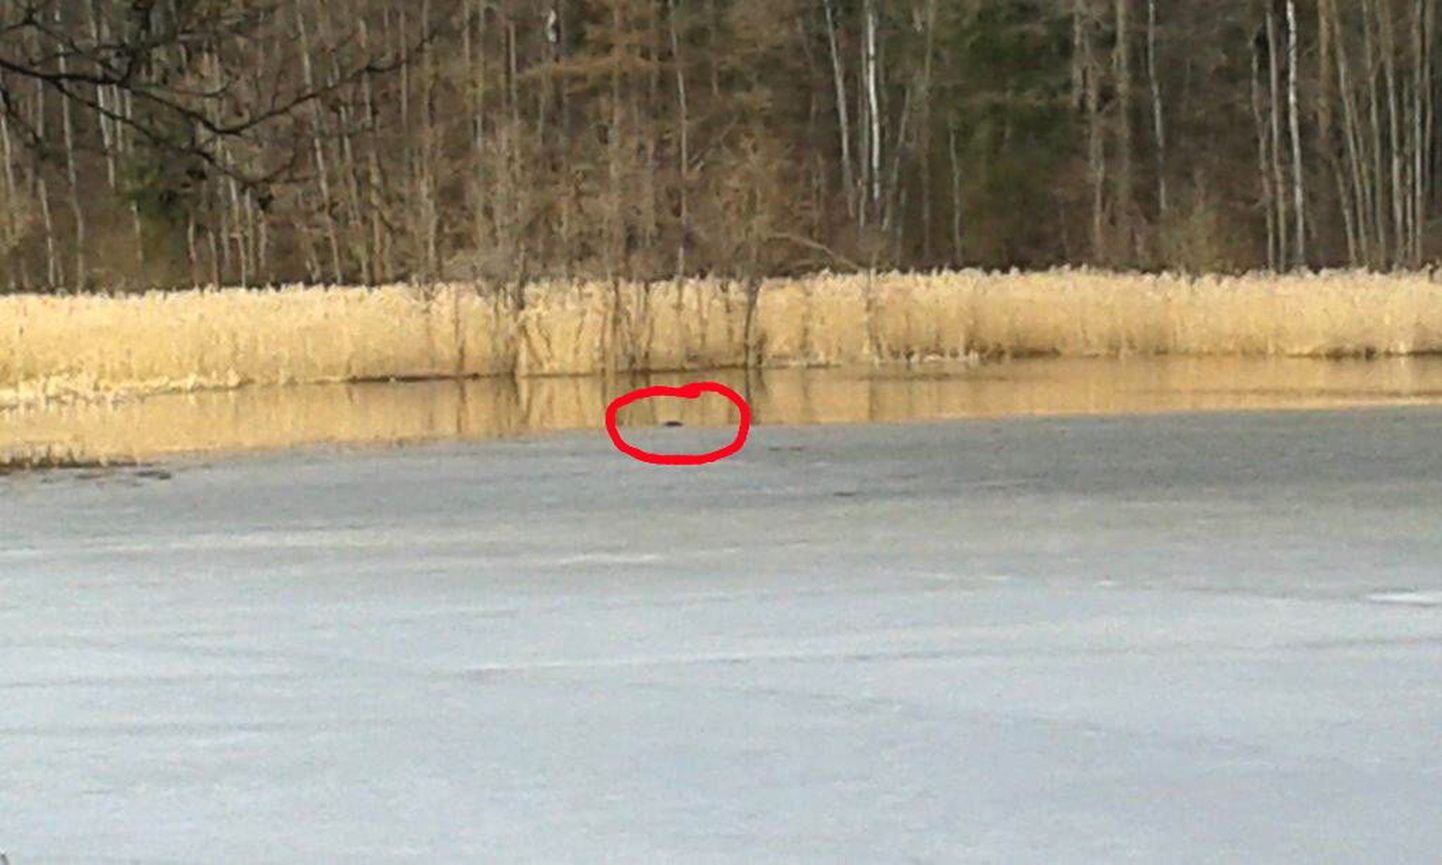 Kui politsei 7. aprillil Pikkjärve äärde jõudis, lebas jää ja vee piiril müts, mis kuulus Viktorile. Mehe surnukeha leiti samast veekogust alles eelmisel nädalal.